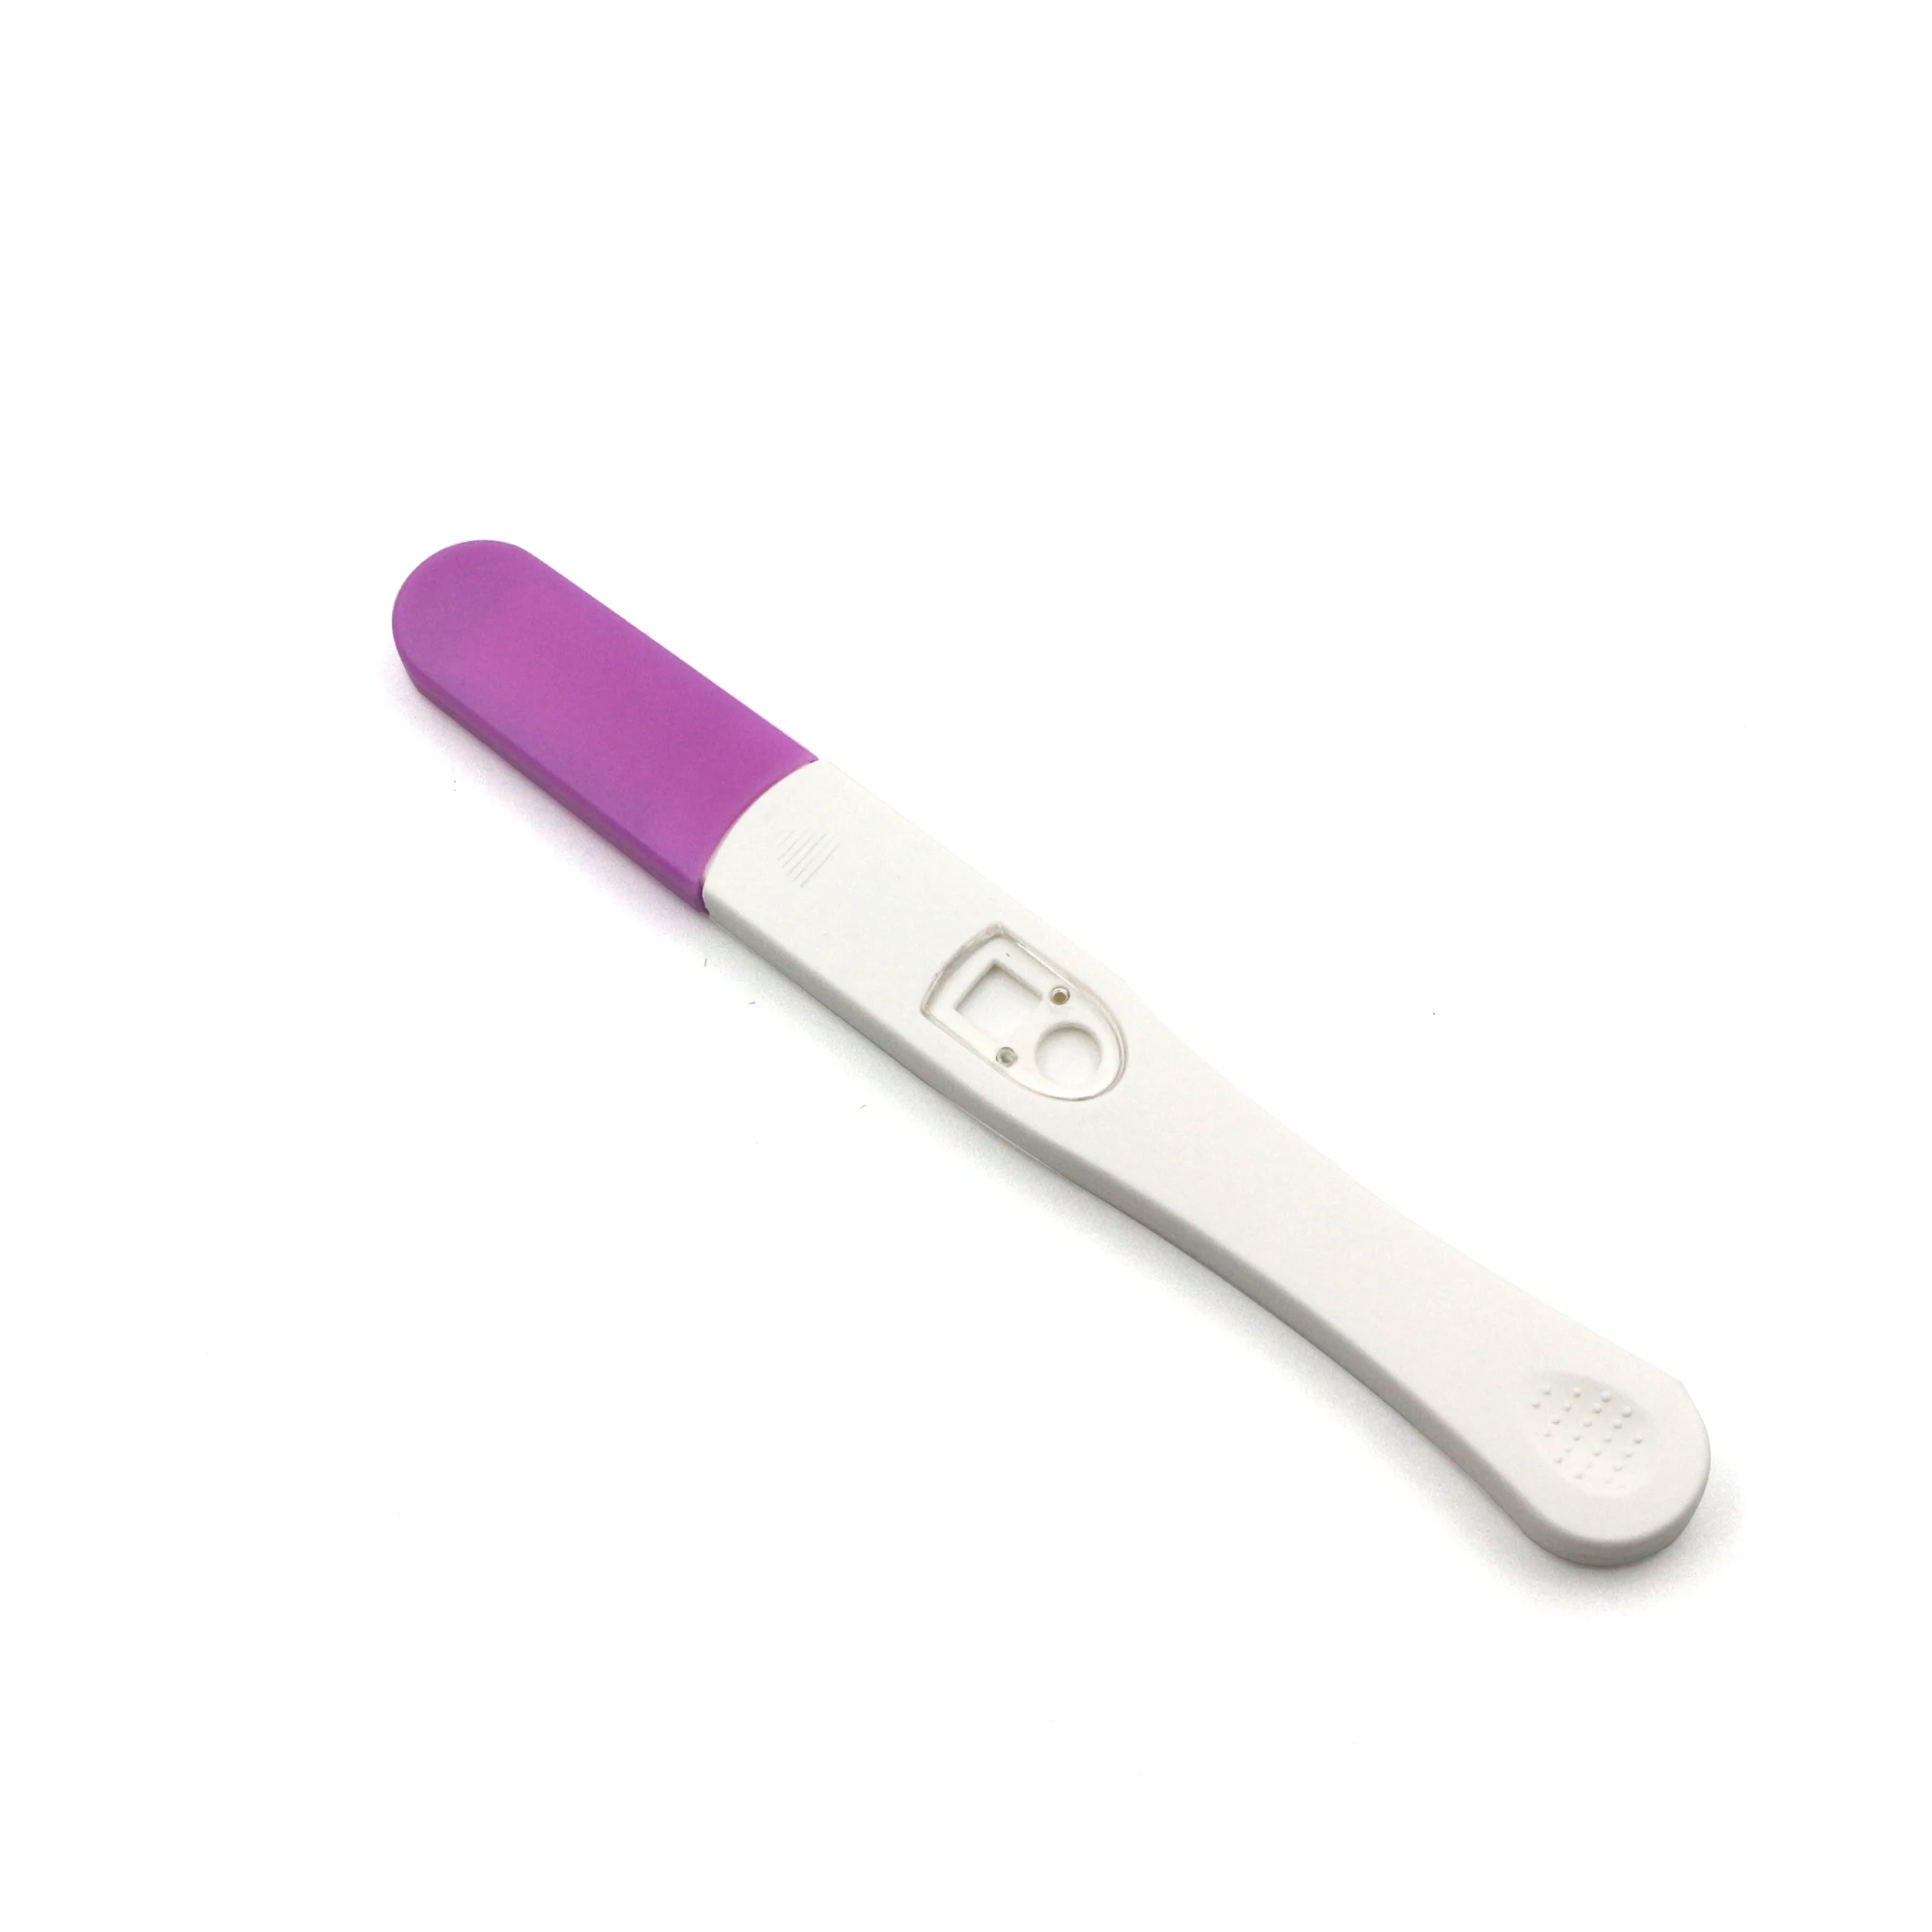 Home Blood Recare Pregnancy Test Kit - Buy Recare ...